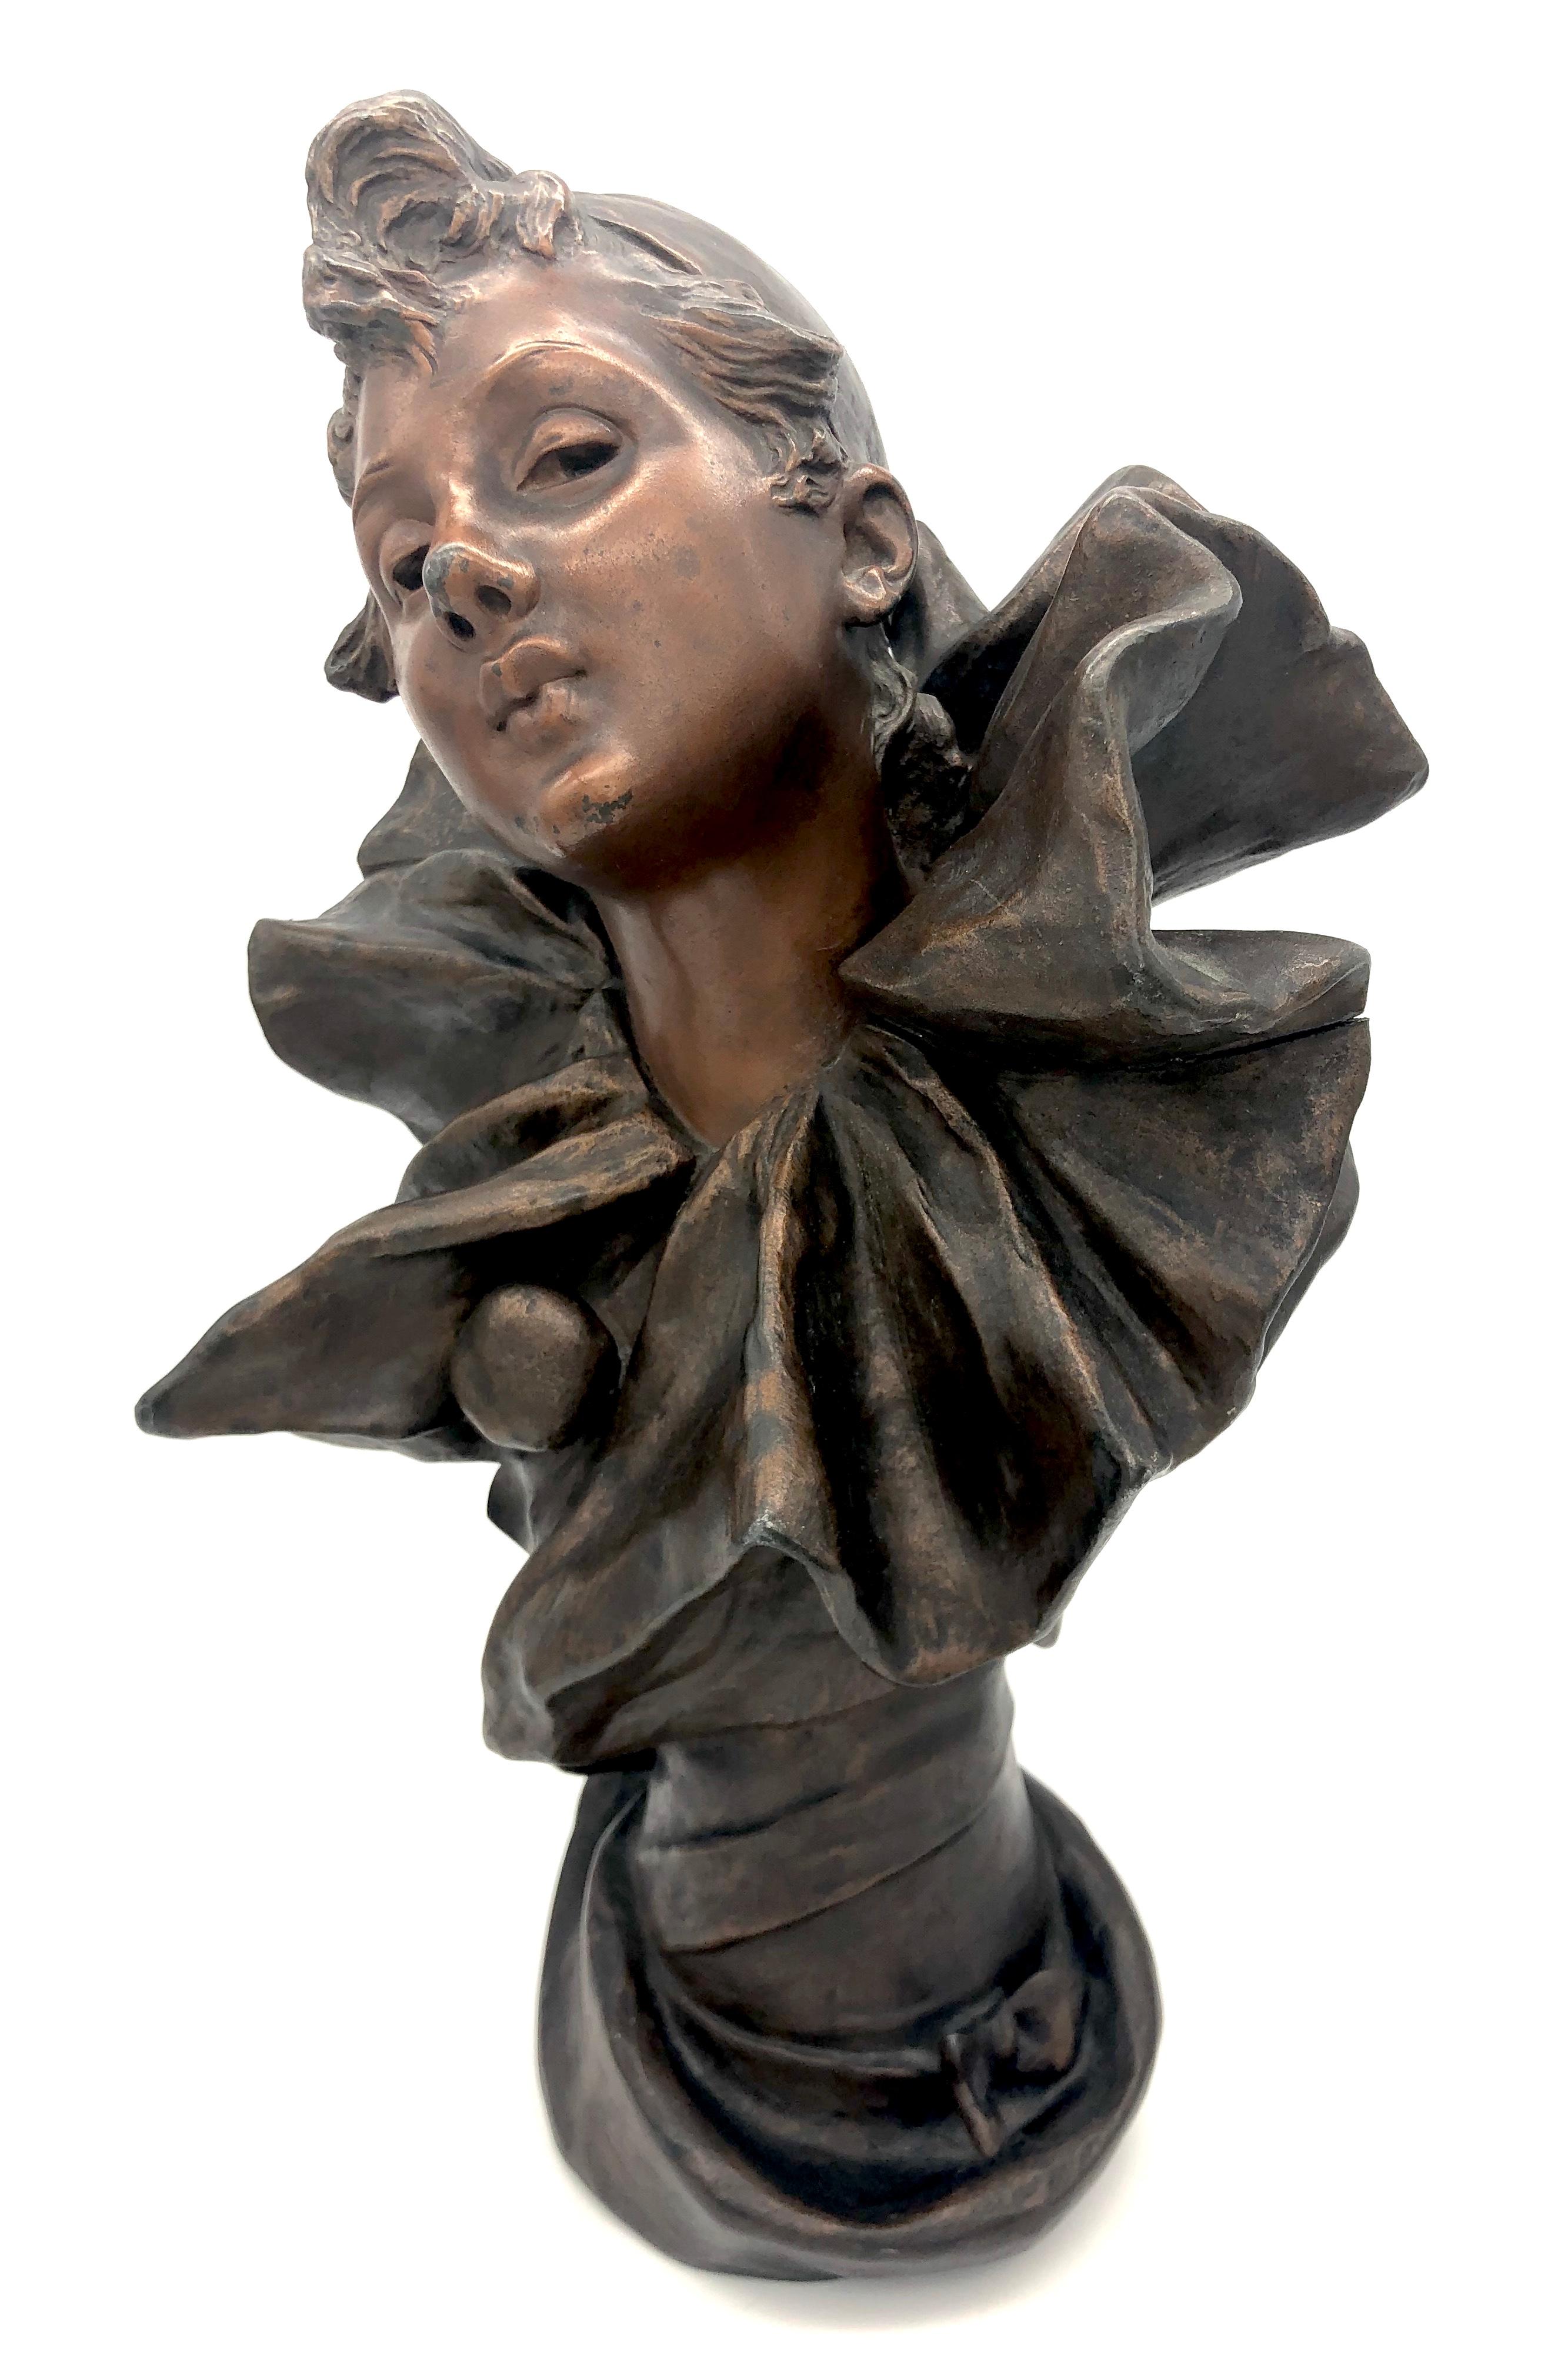 Dieser wunderbare, ausdrucksstarke Abguss einer Pierrette, eines weiblichen Pierrots. Wurde in Frankreich im letzten Jahrzehnt des 19. Jahrhunderts hingerichtet.
Die Skulptur ist mit R. Allard signiert.